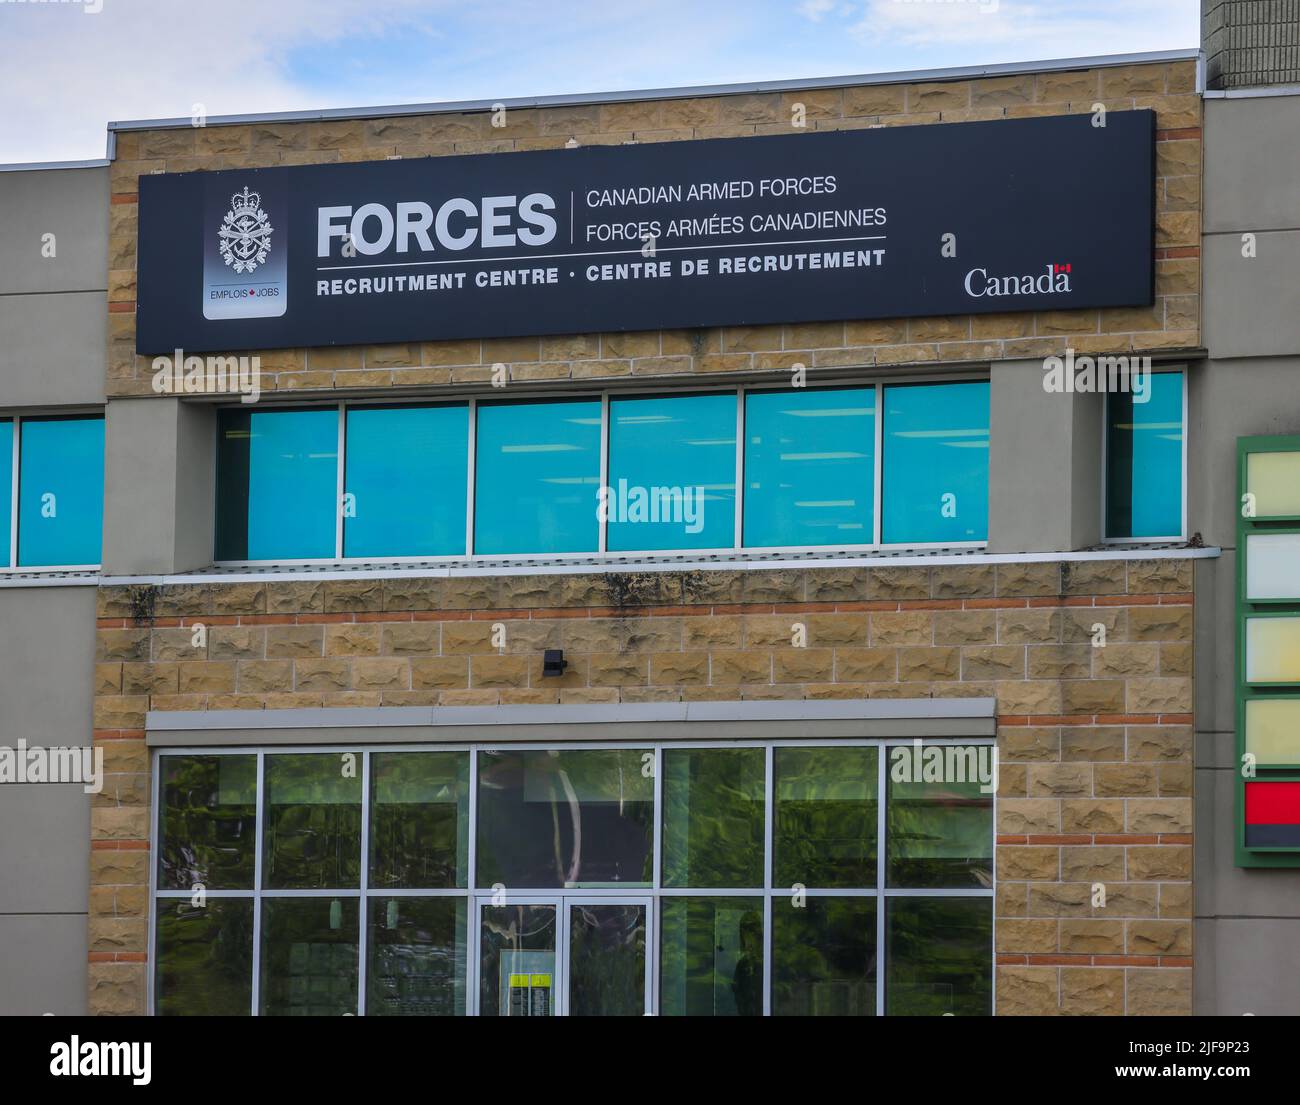 Rekrutierungszentrum der kanadischen Streitkräfte (CAF) in Halifax, Nova Scotia. CAF ist das vereinte Militär Kanadas. HALIFAX, KANADA - JUNI 2022 Stockfoto